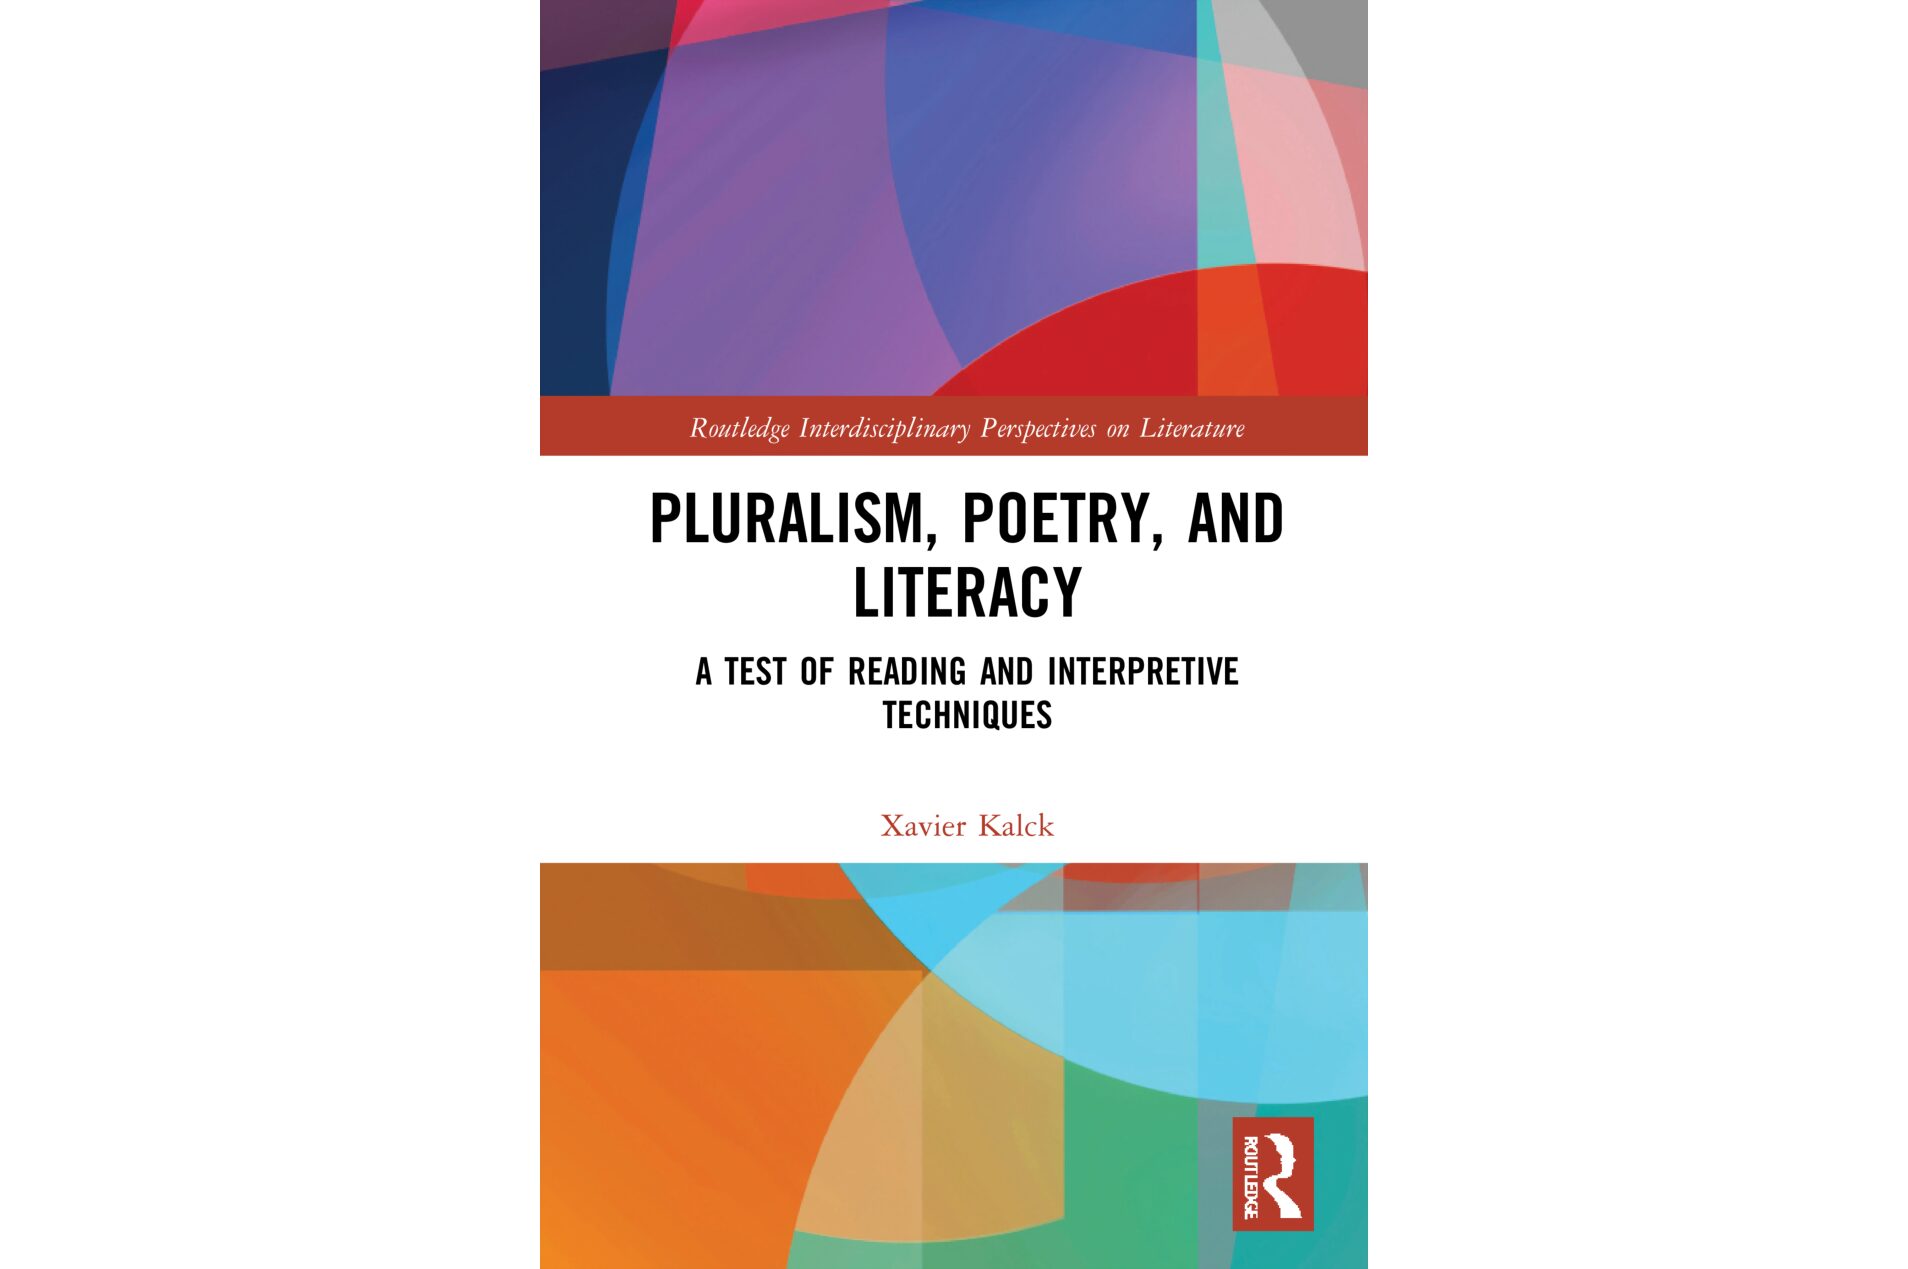 Lire la suite à propos de l’article PAR: X. Kalck, « Pluralism, Poetry, and Literacy. A Test of Reading and Interpretive Techniques », Routledge, 2021.